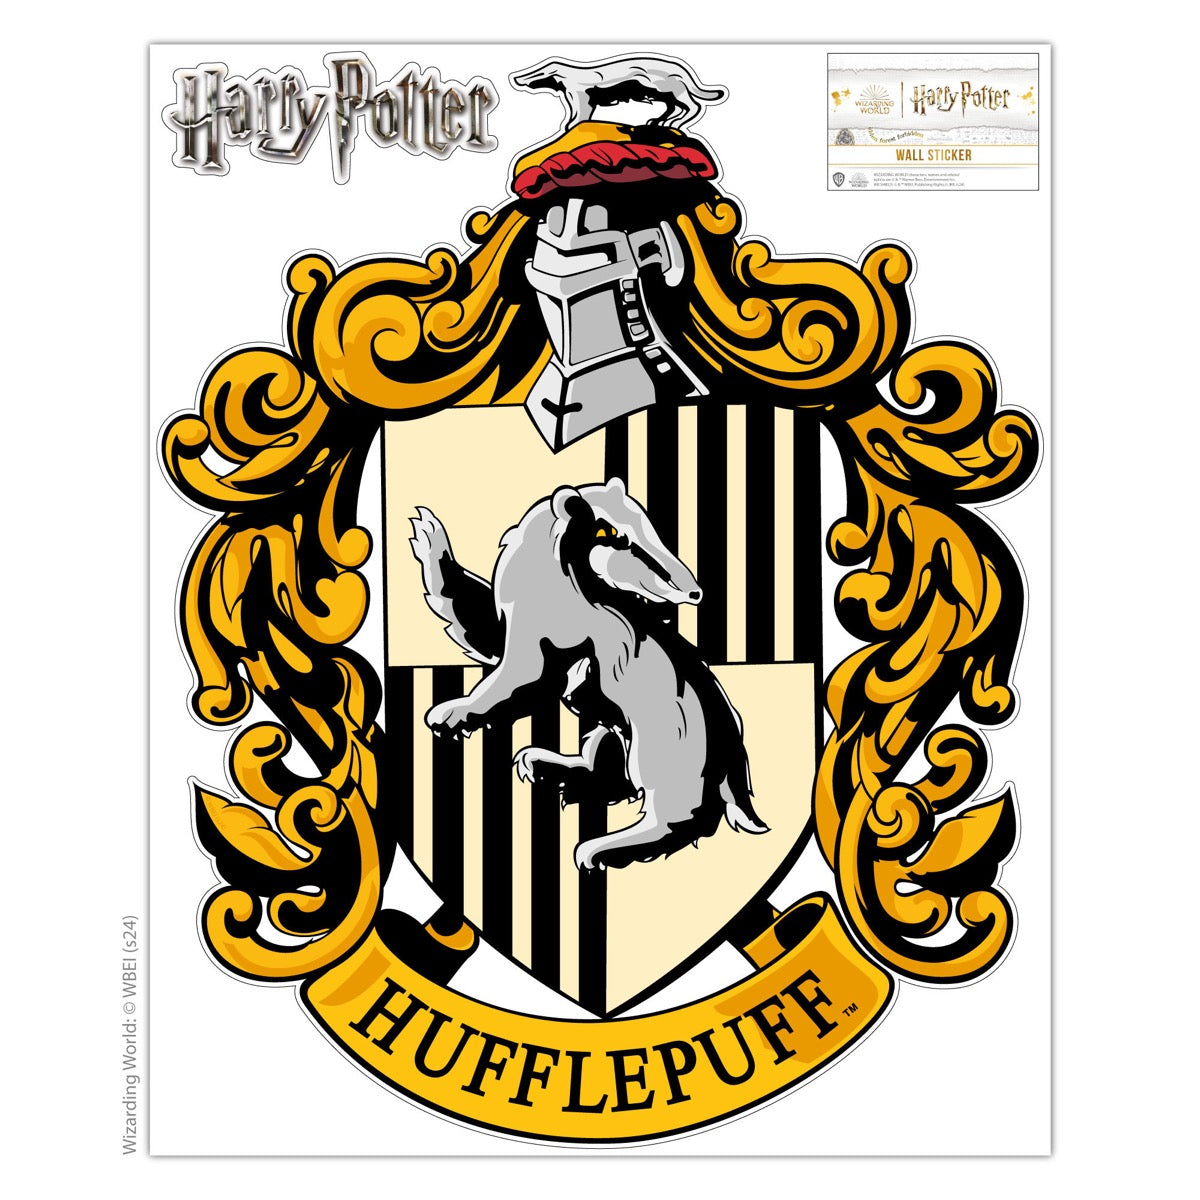 HARRY POTTER Wall Sticker - Hufflepuff Crest Wall Decal Wizarding World Art